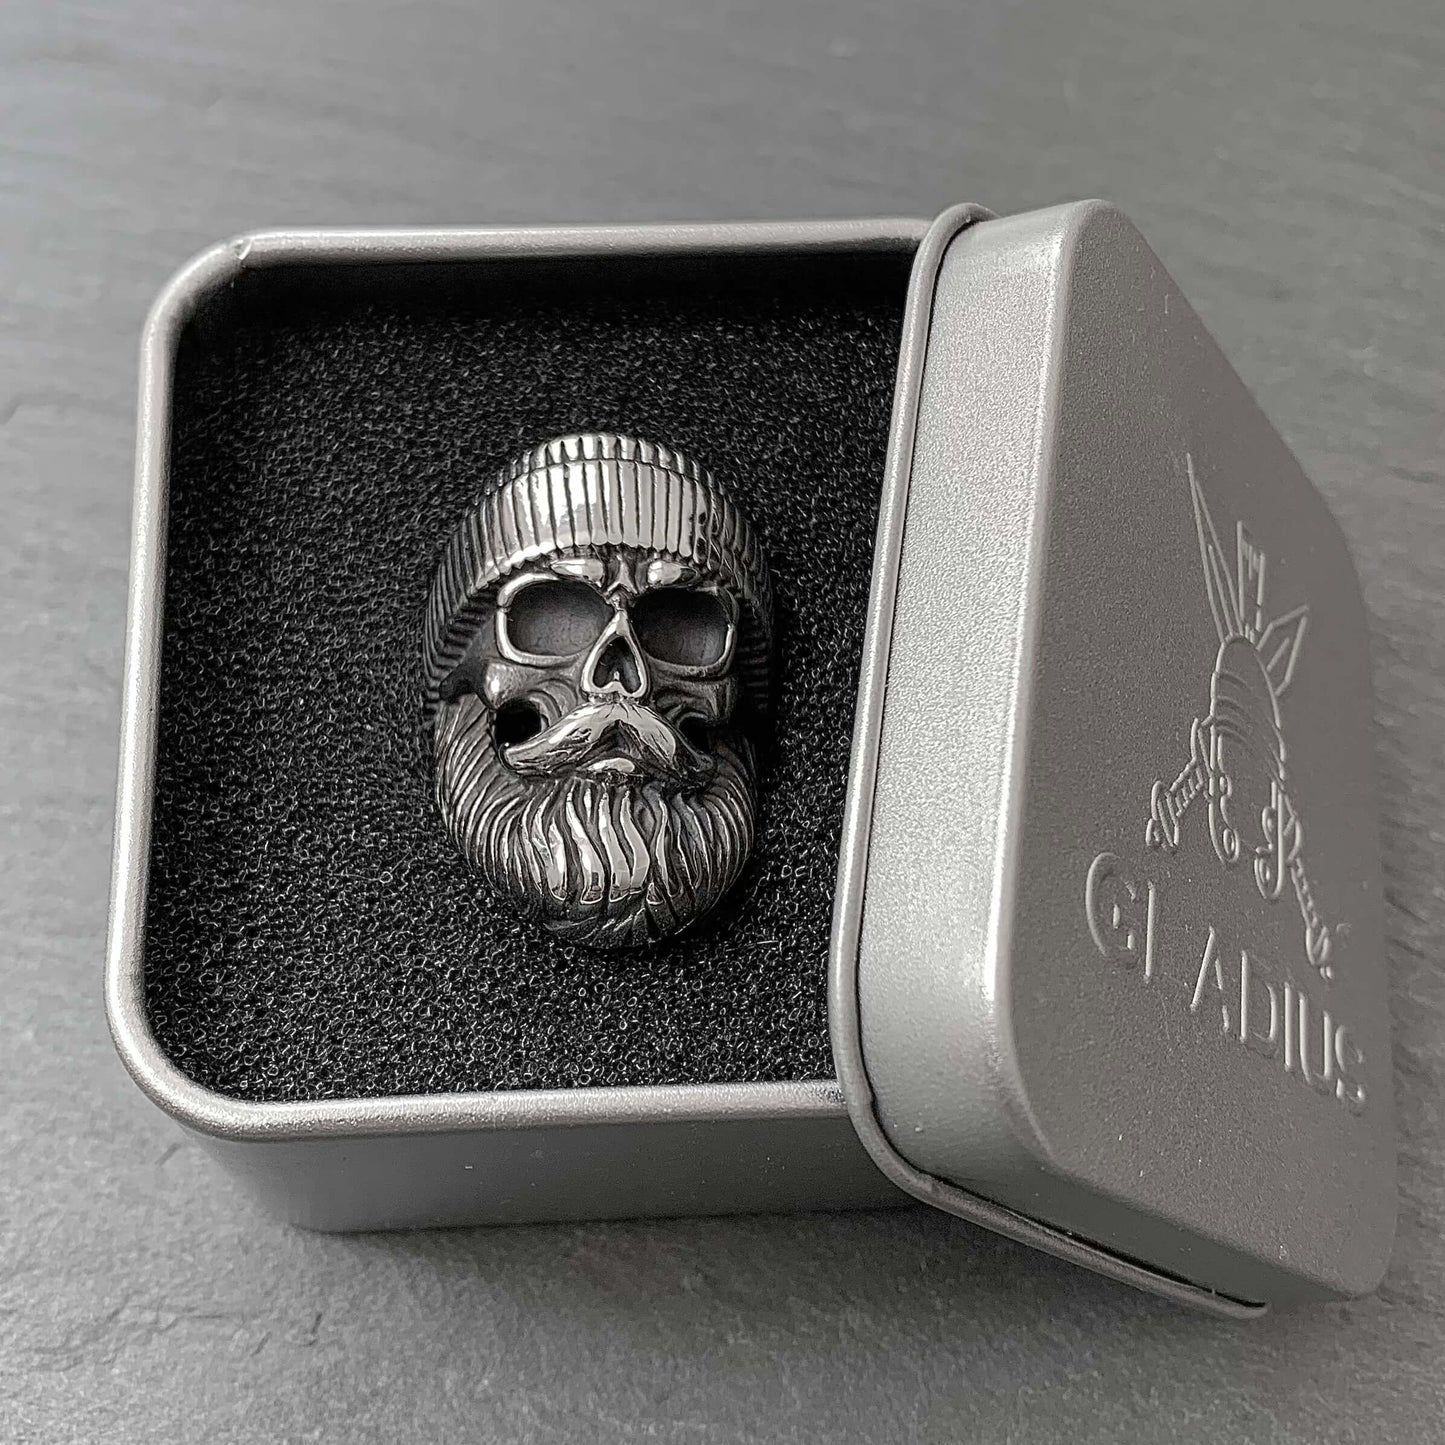 Beanie Skull Ring